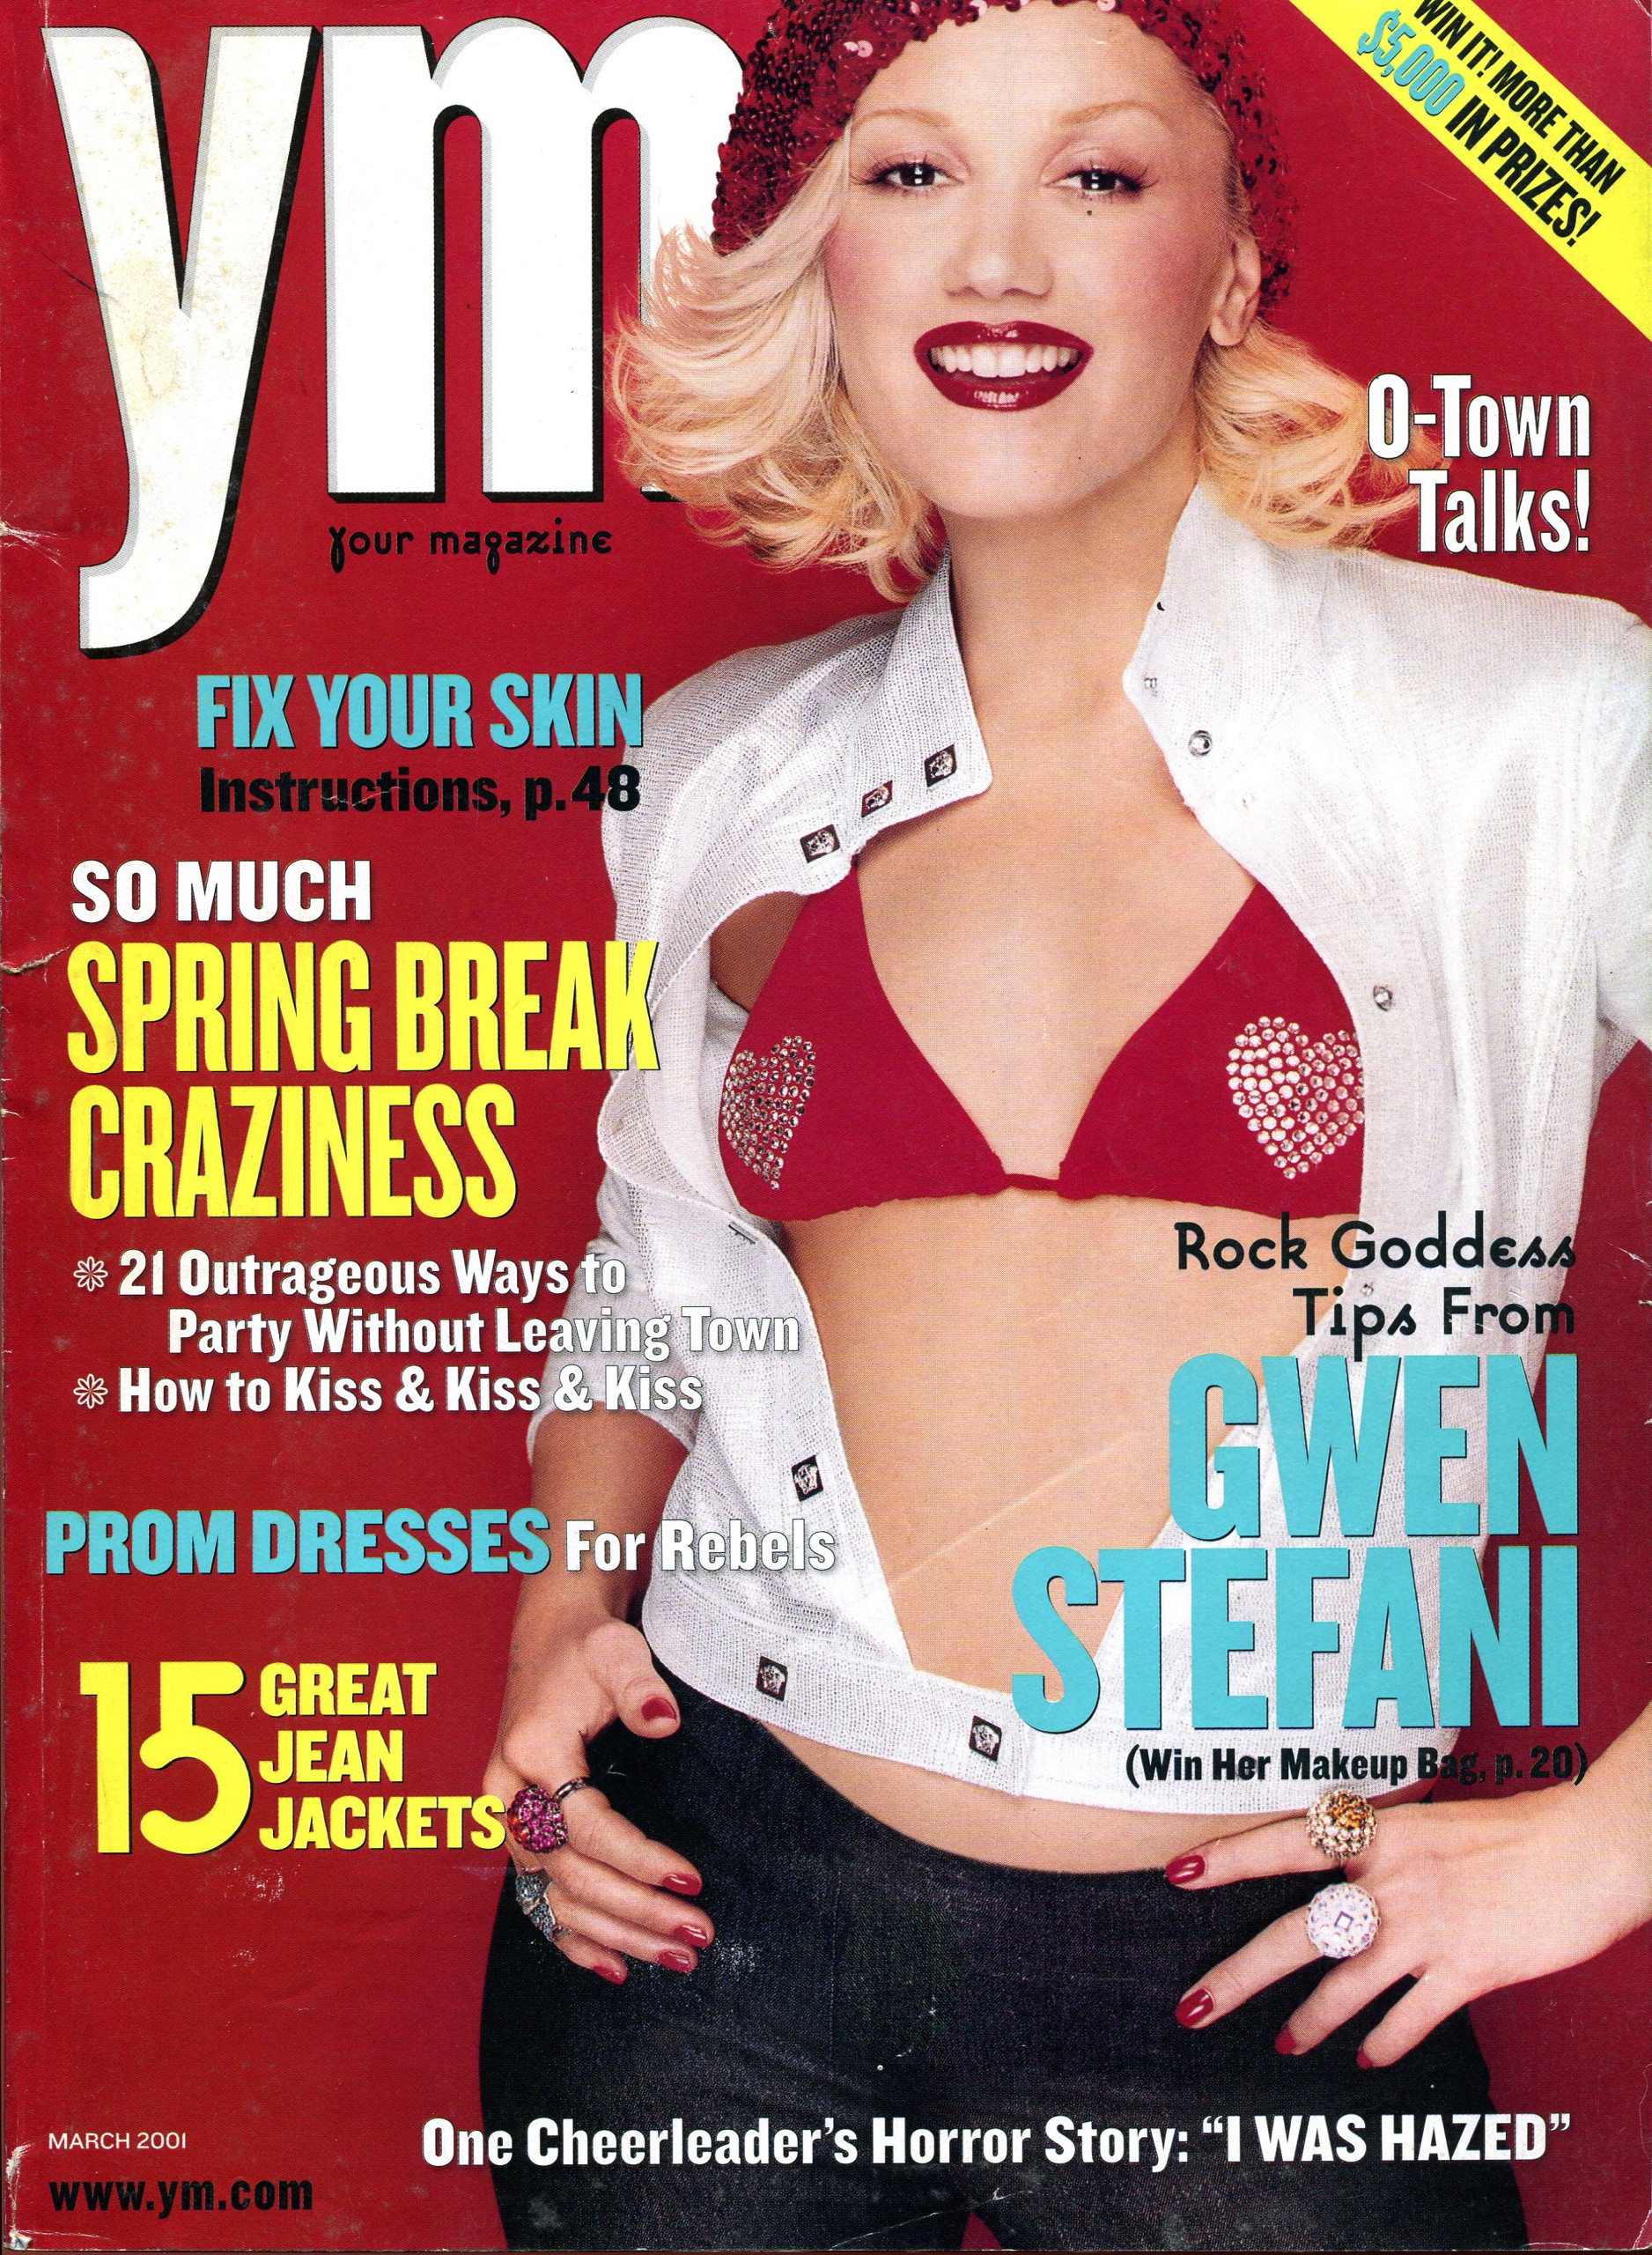 YM - March 2001 (Copy)